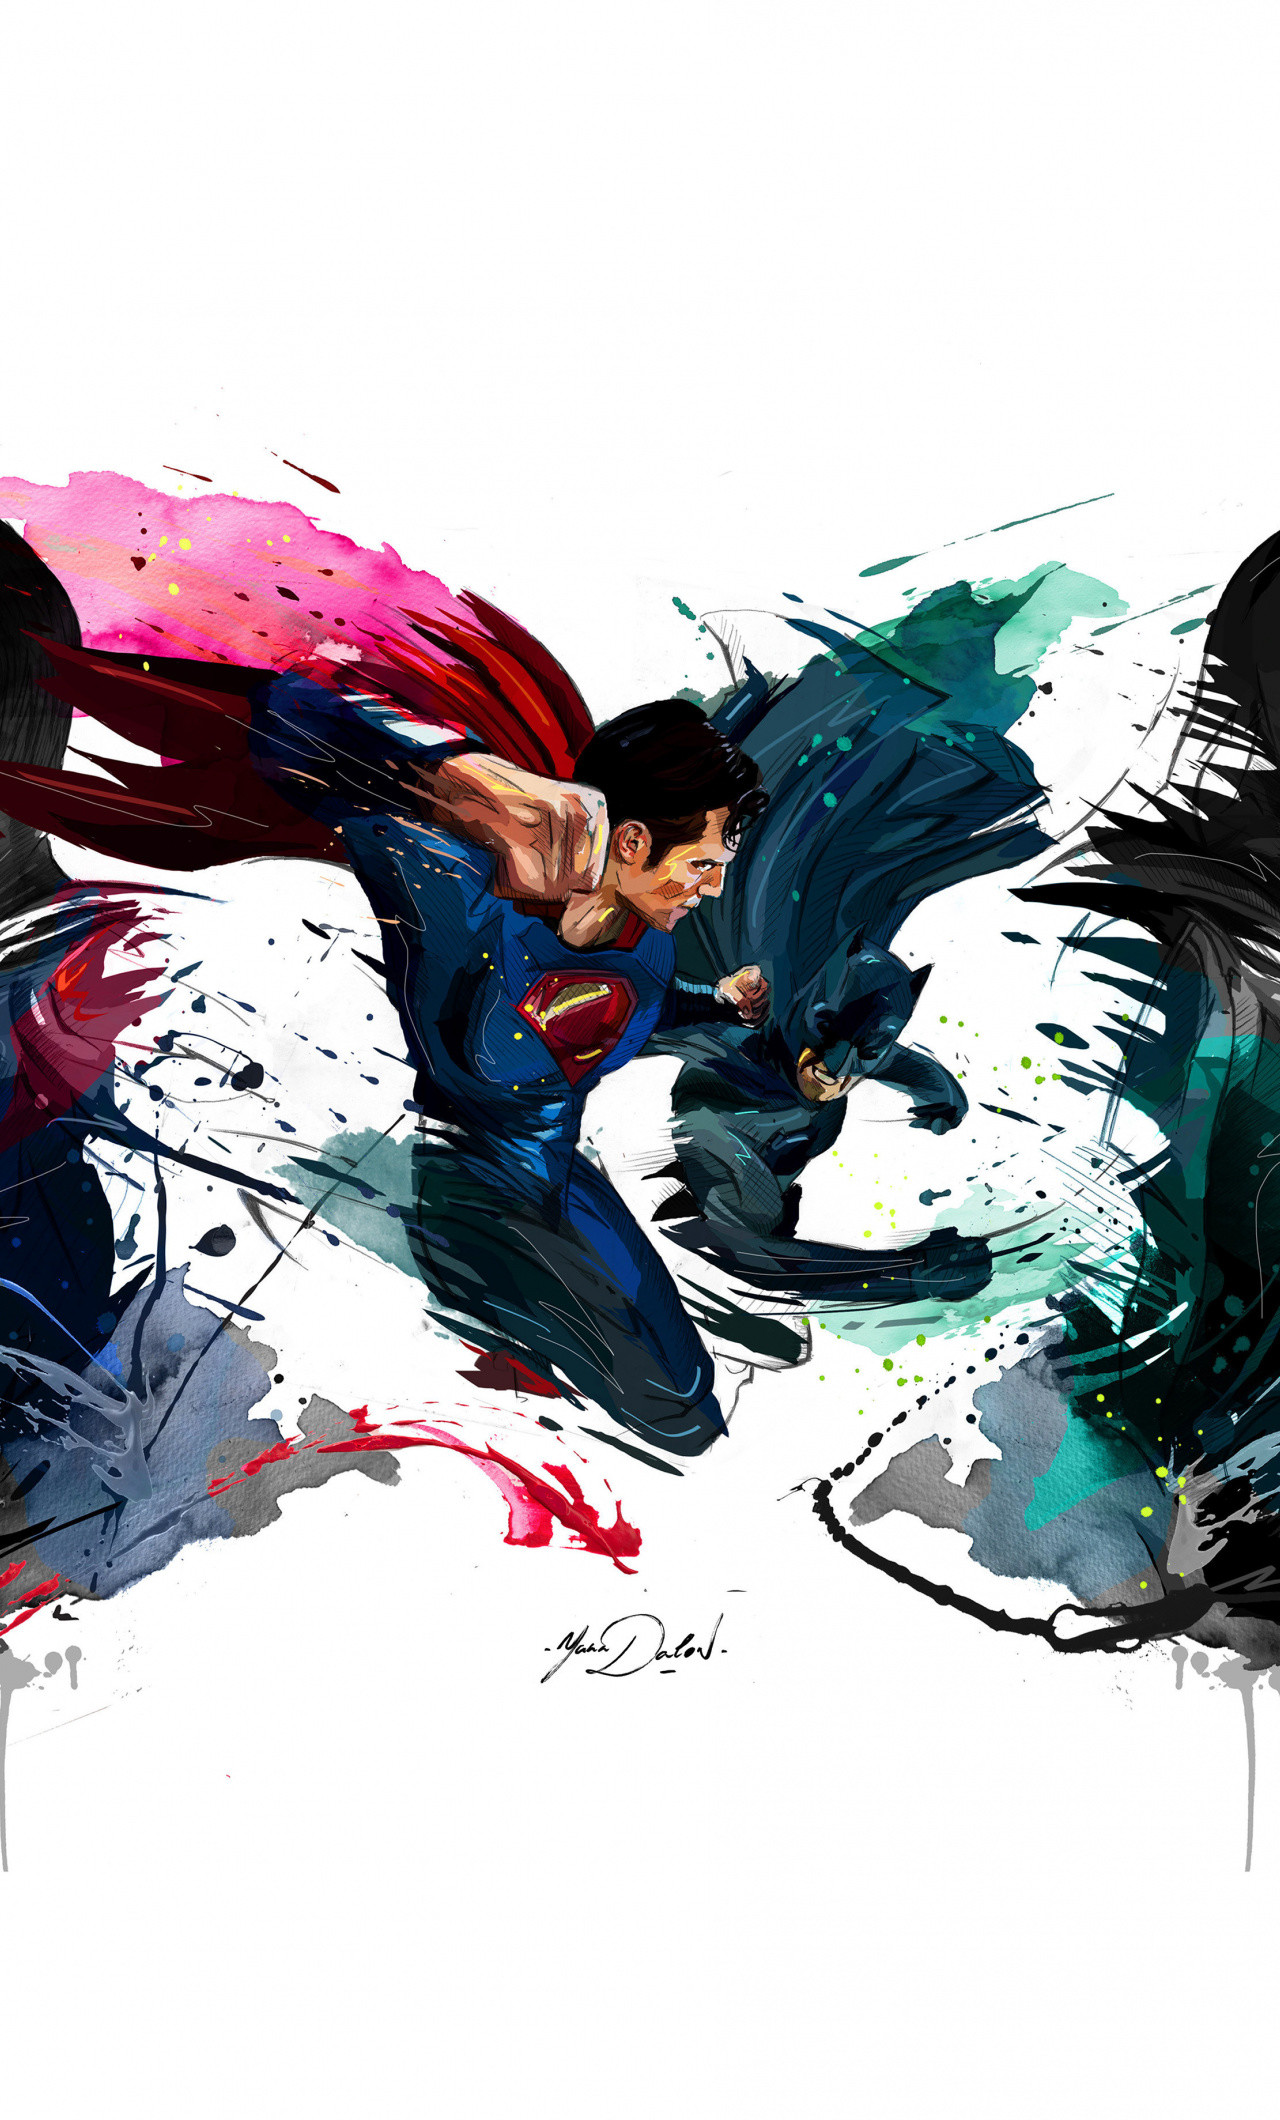 1280x2120 Batman vs superman, 4k, sketch artwork,  wallpaper